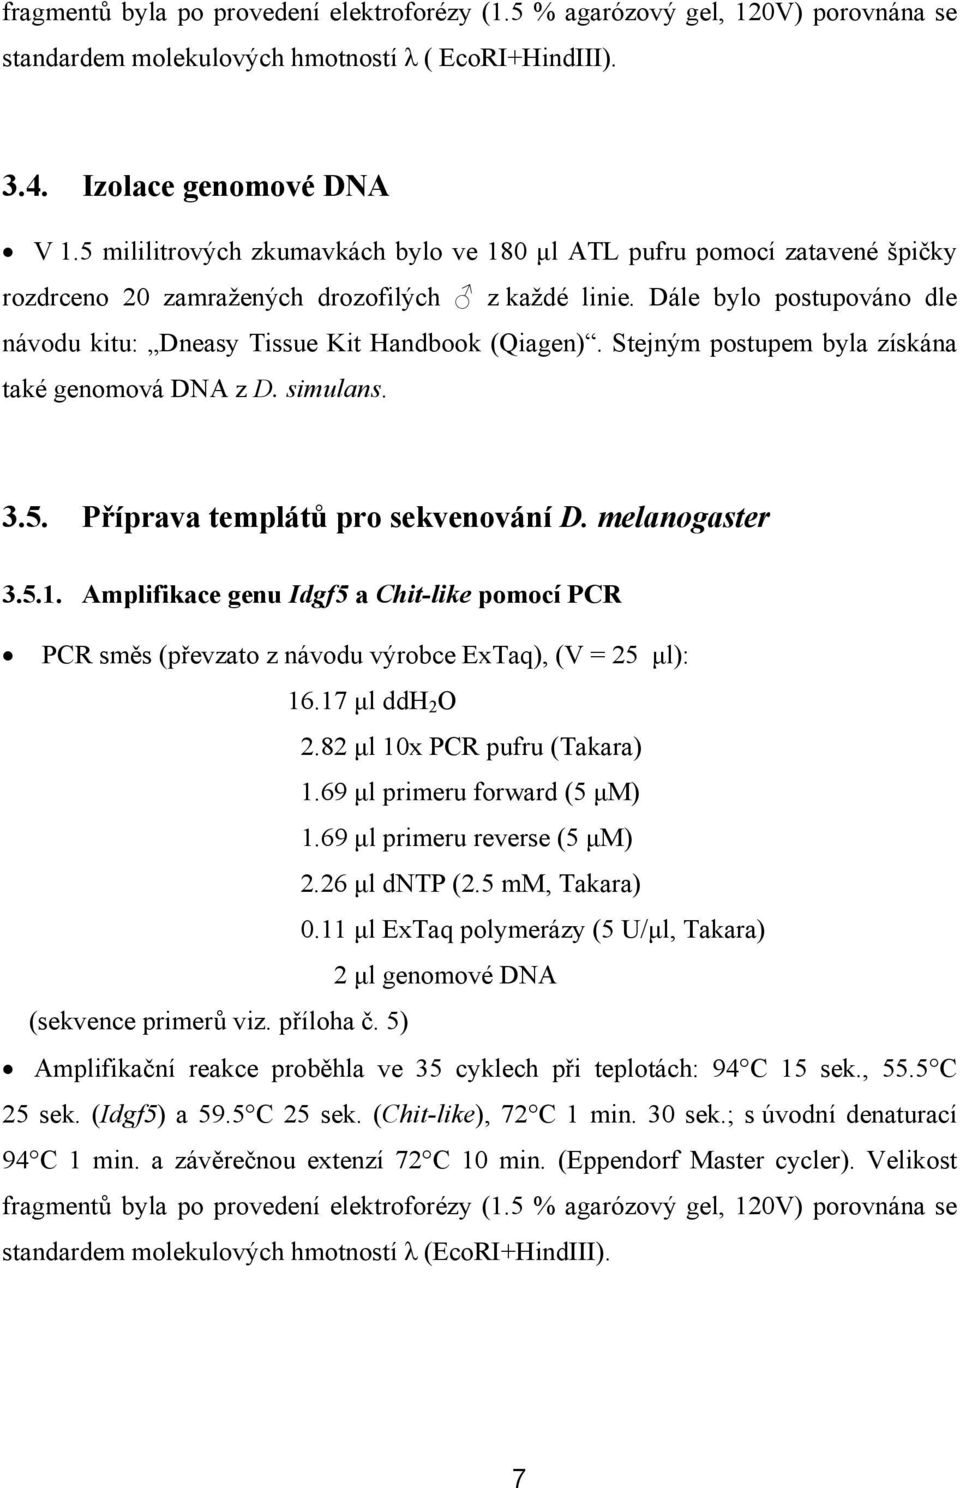 Dále bylo postupováno dle návodu kitu: Dneasy Tissue Kit Handbook (Qiagen). Stejným postupem byla získána také genomová DNA z D. simulans. 3.5. Příprava templátů pro sekvenování D. melanogaster 3.5.1.